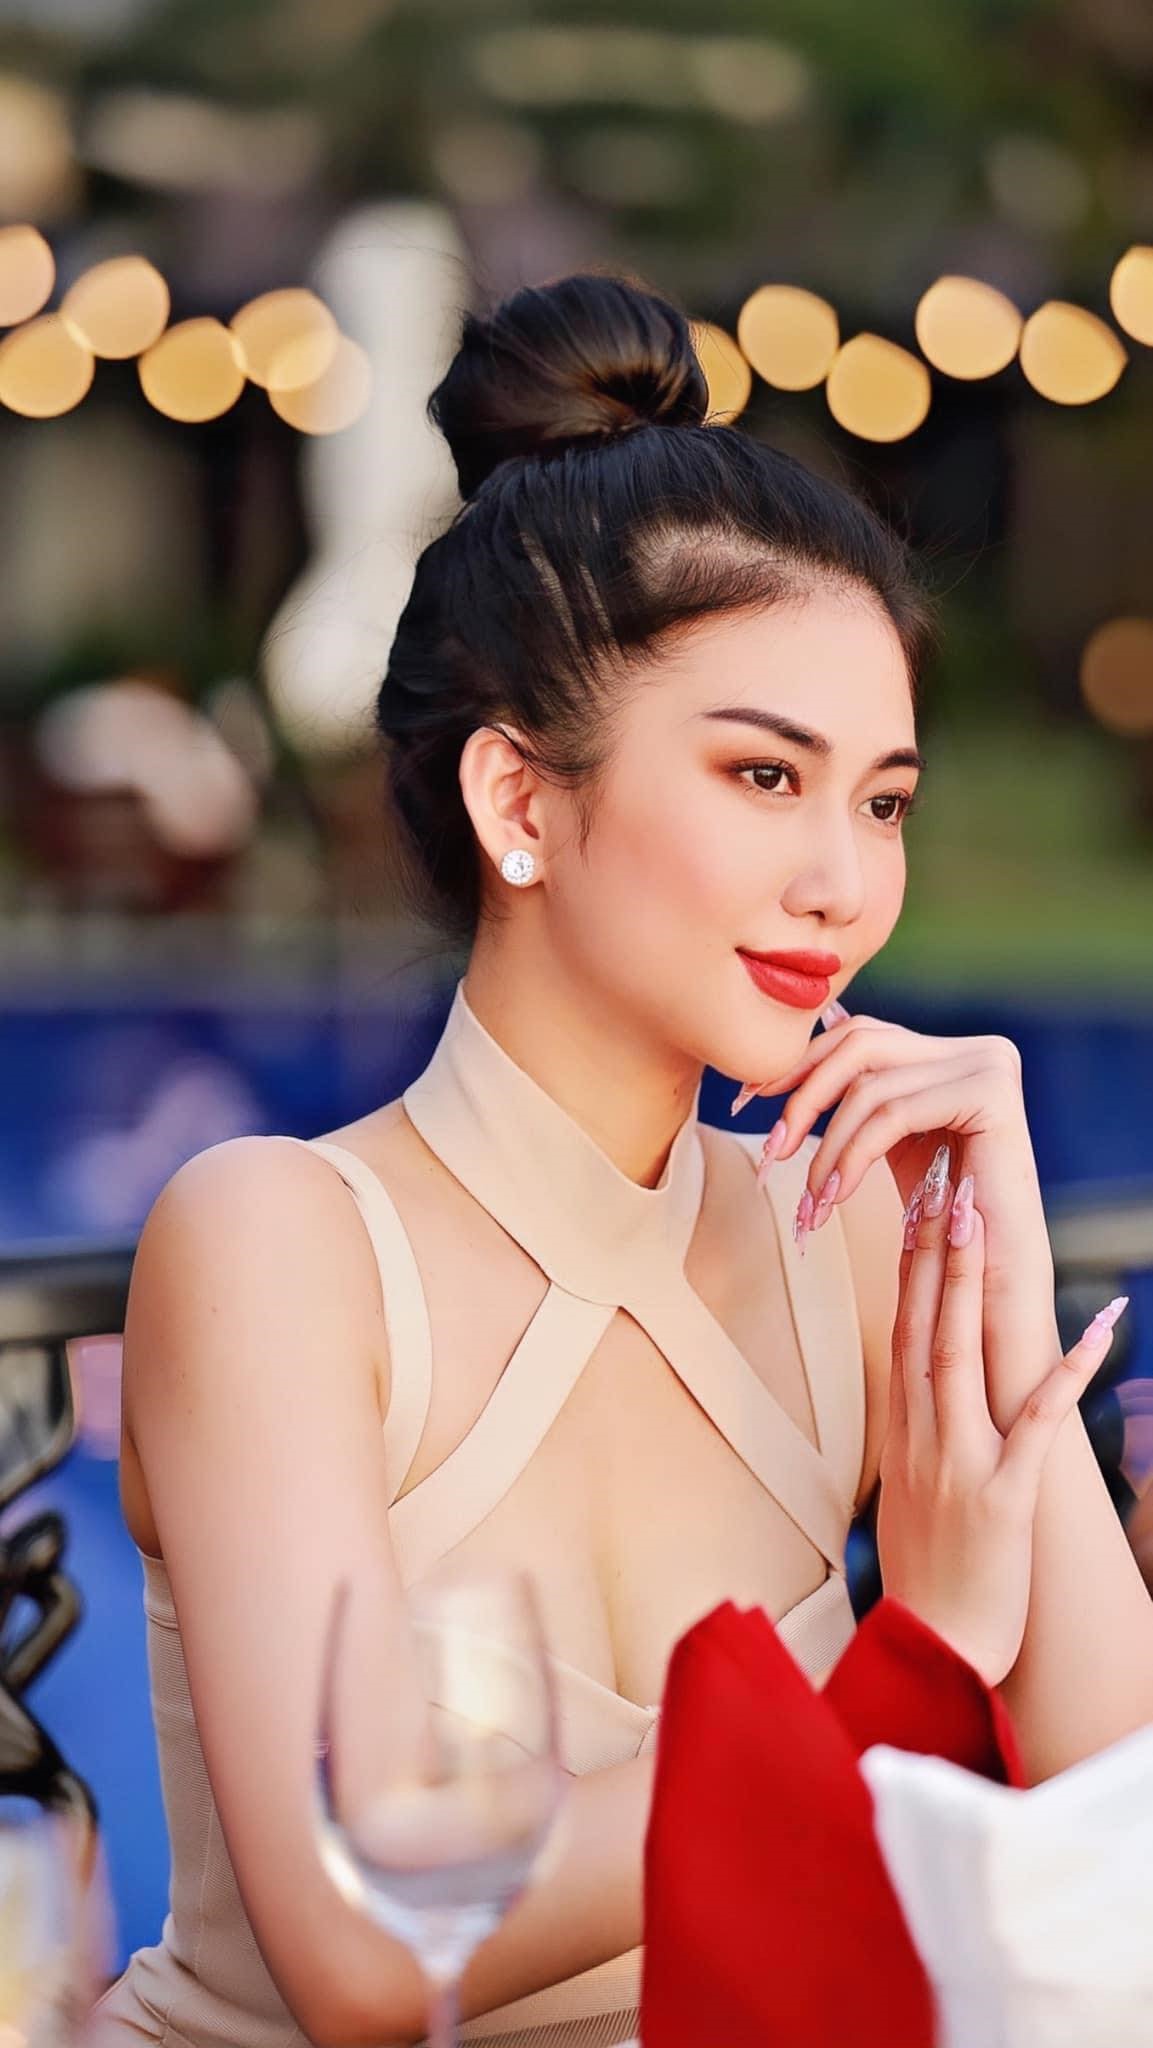 Trần Thị My sinh năm 1997, quê Bạc Liêu, là một trong những gương mặt được đánh giá cao, thu hút lượng fan lớn từ vòng chung kết Hoa hậu Du lịch Việt Nam 2022.